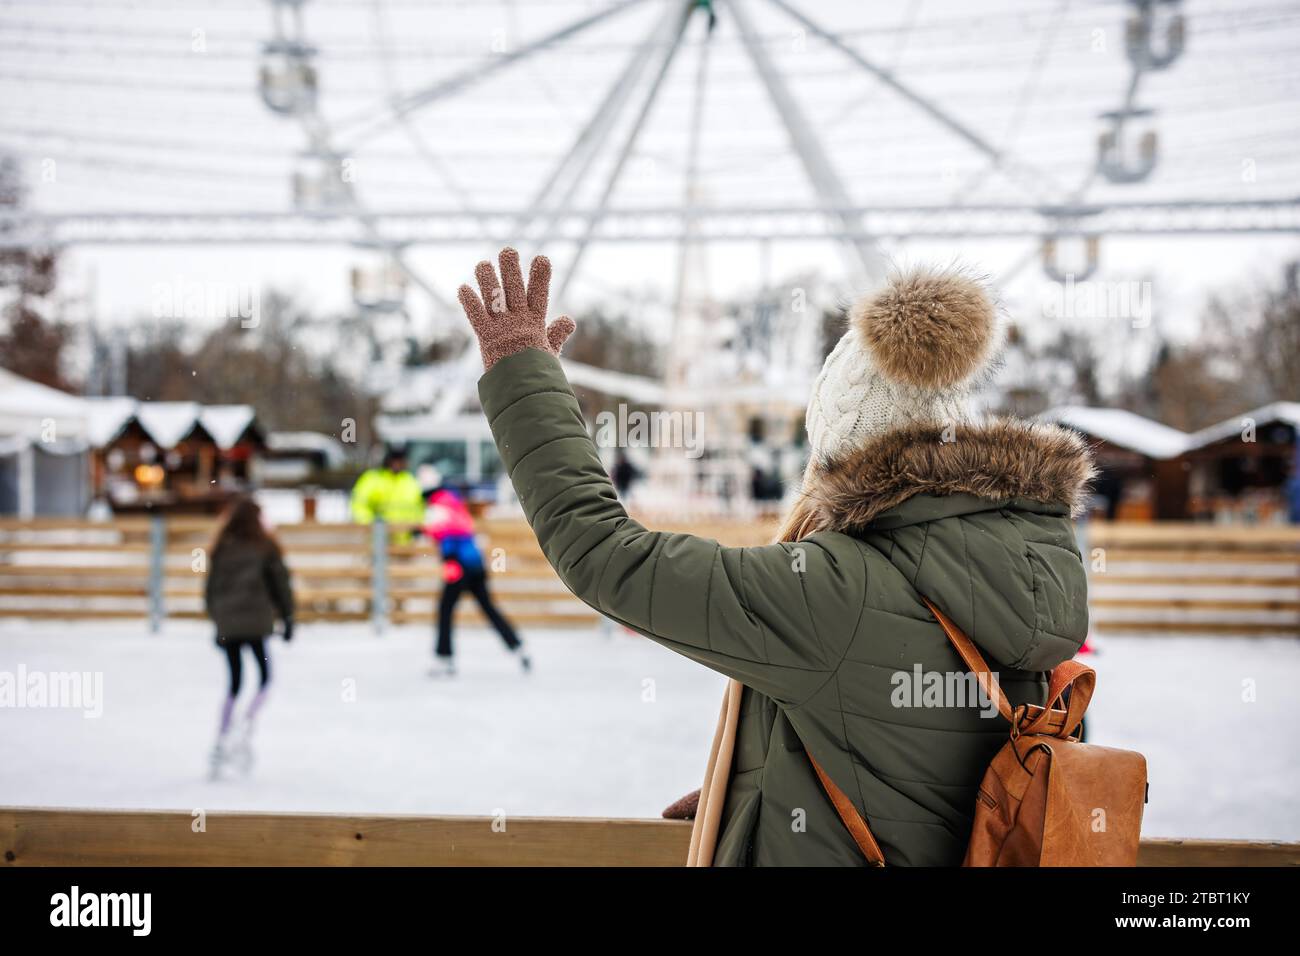 La femme fait signe à la foule de gens qui patinent sur la patinoire. Marché de Noël et vacances de l'Avent en ville. Sport d'hiver Banque D'Images